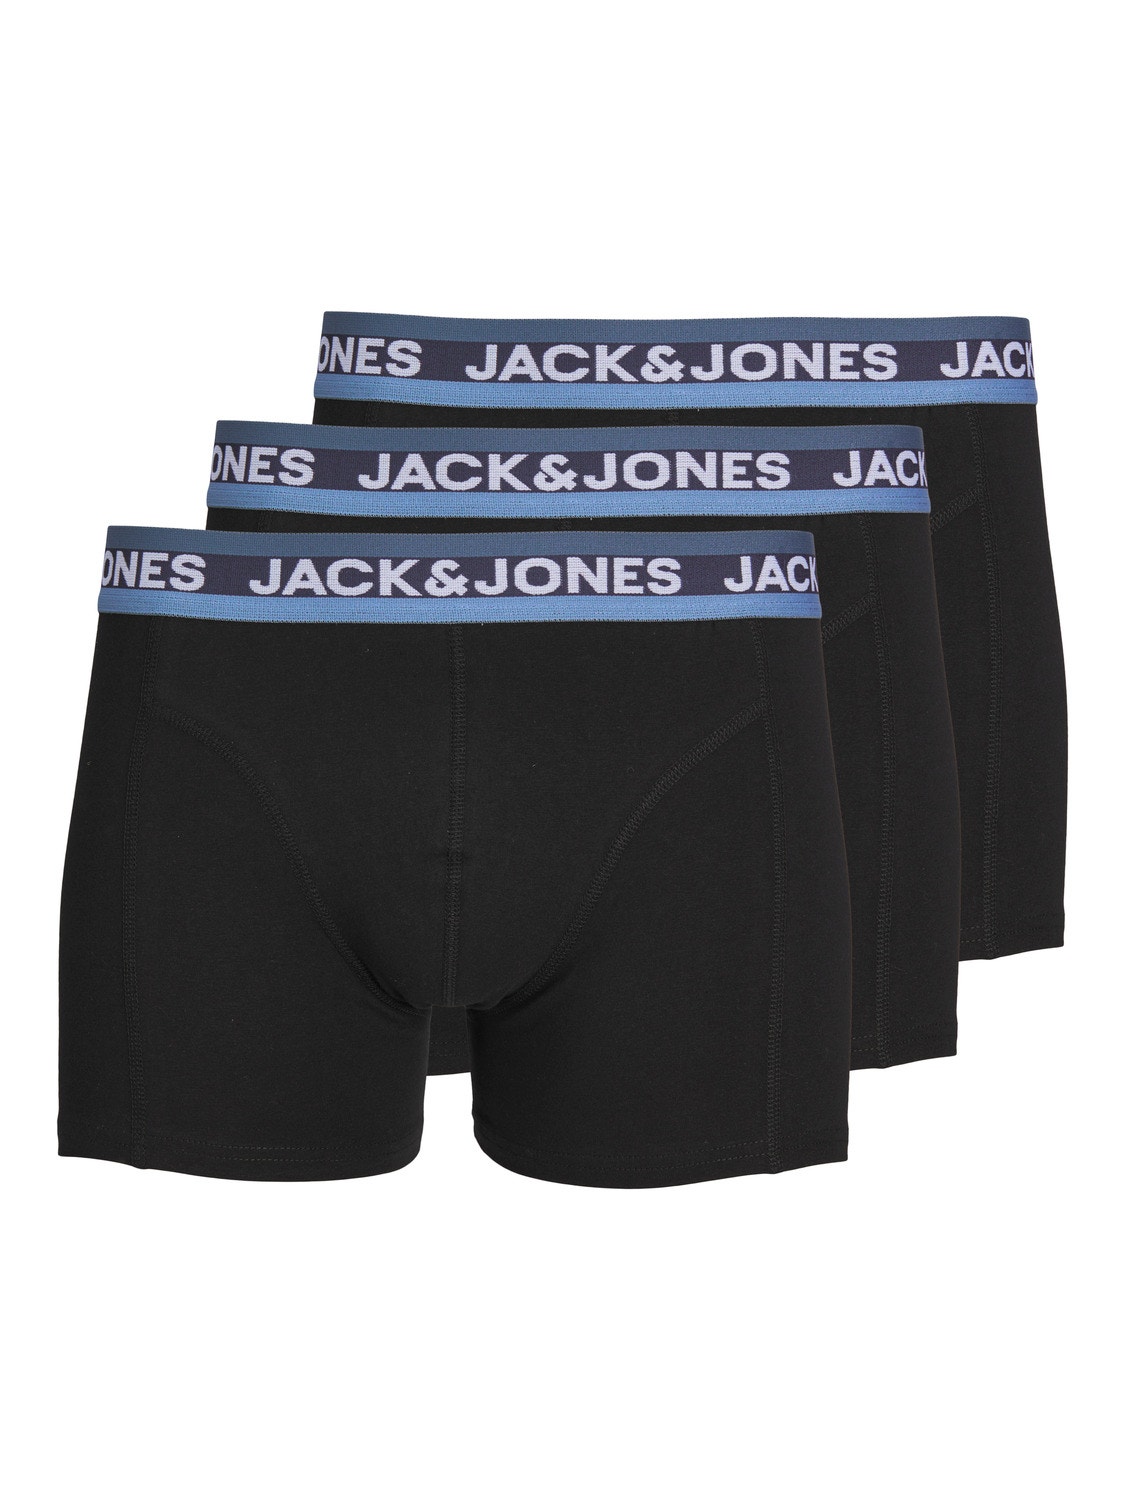 Jack & Jones 3er-pack Boxershorts -Black - 12246322